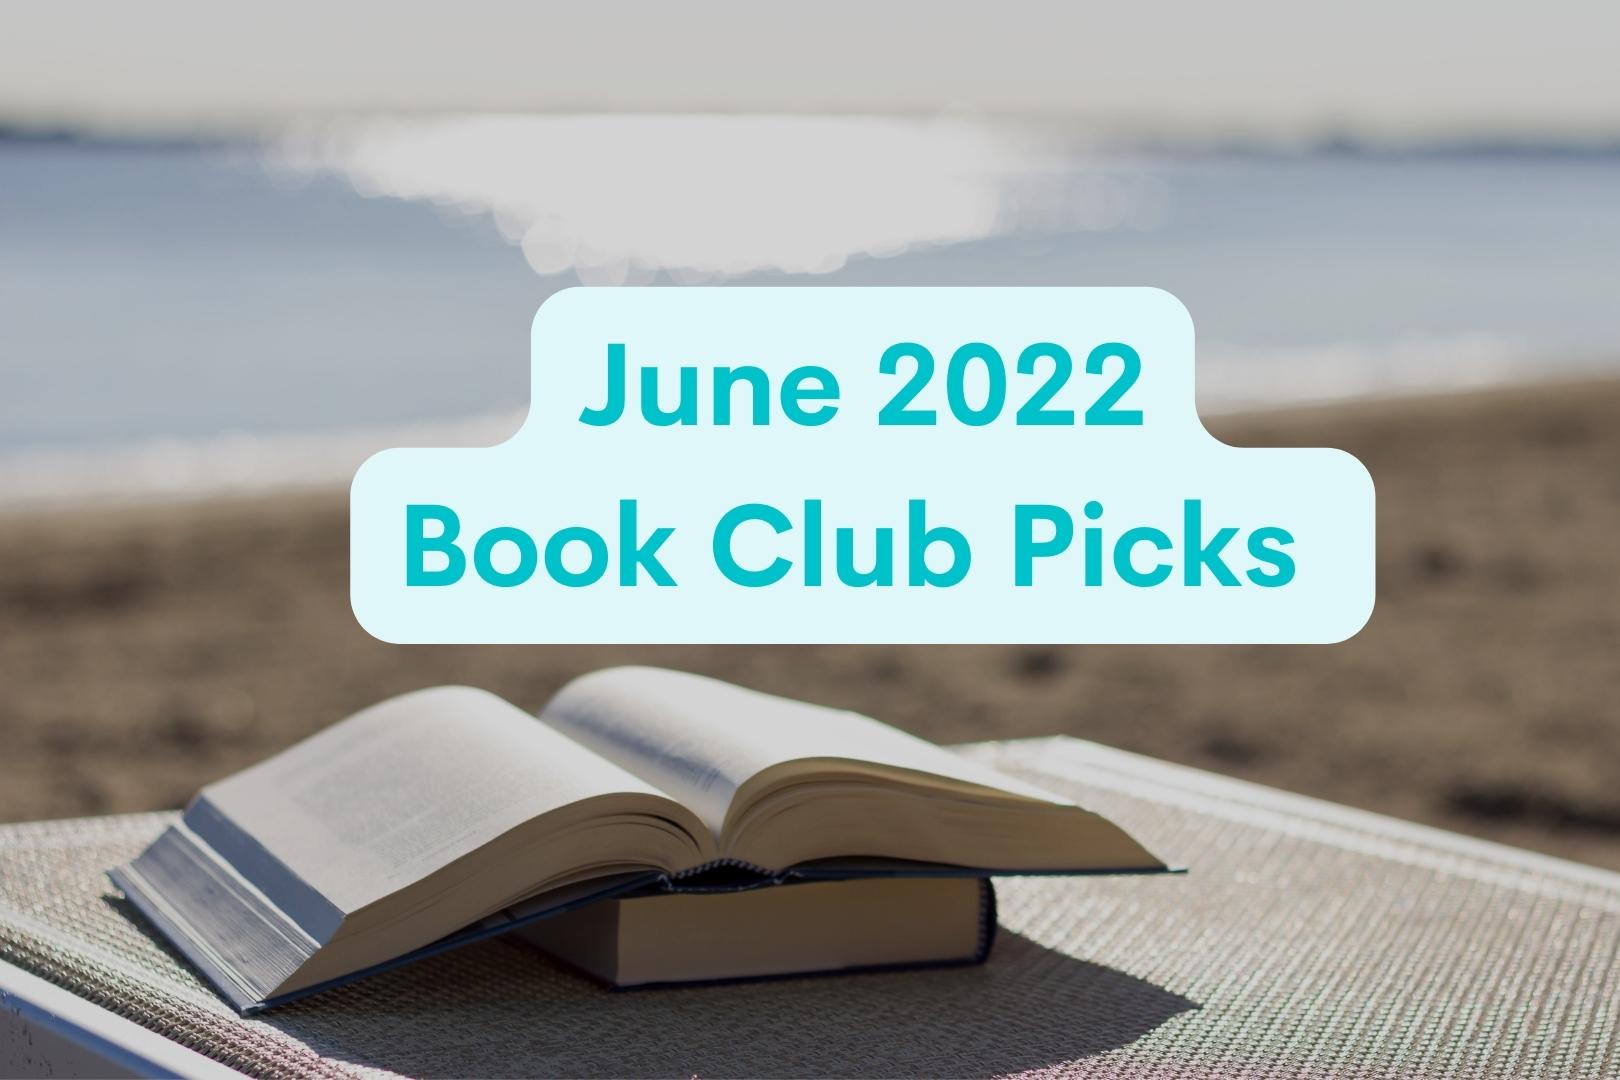 Book Club Picks for June 2022